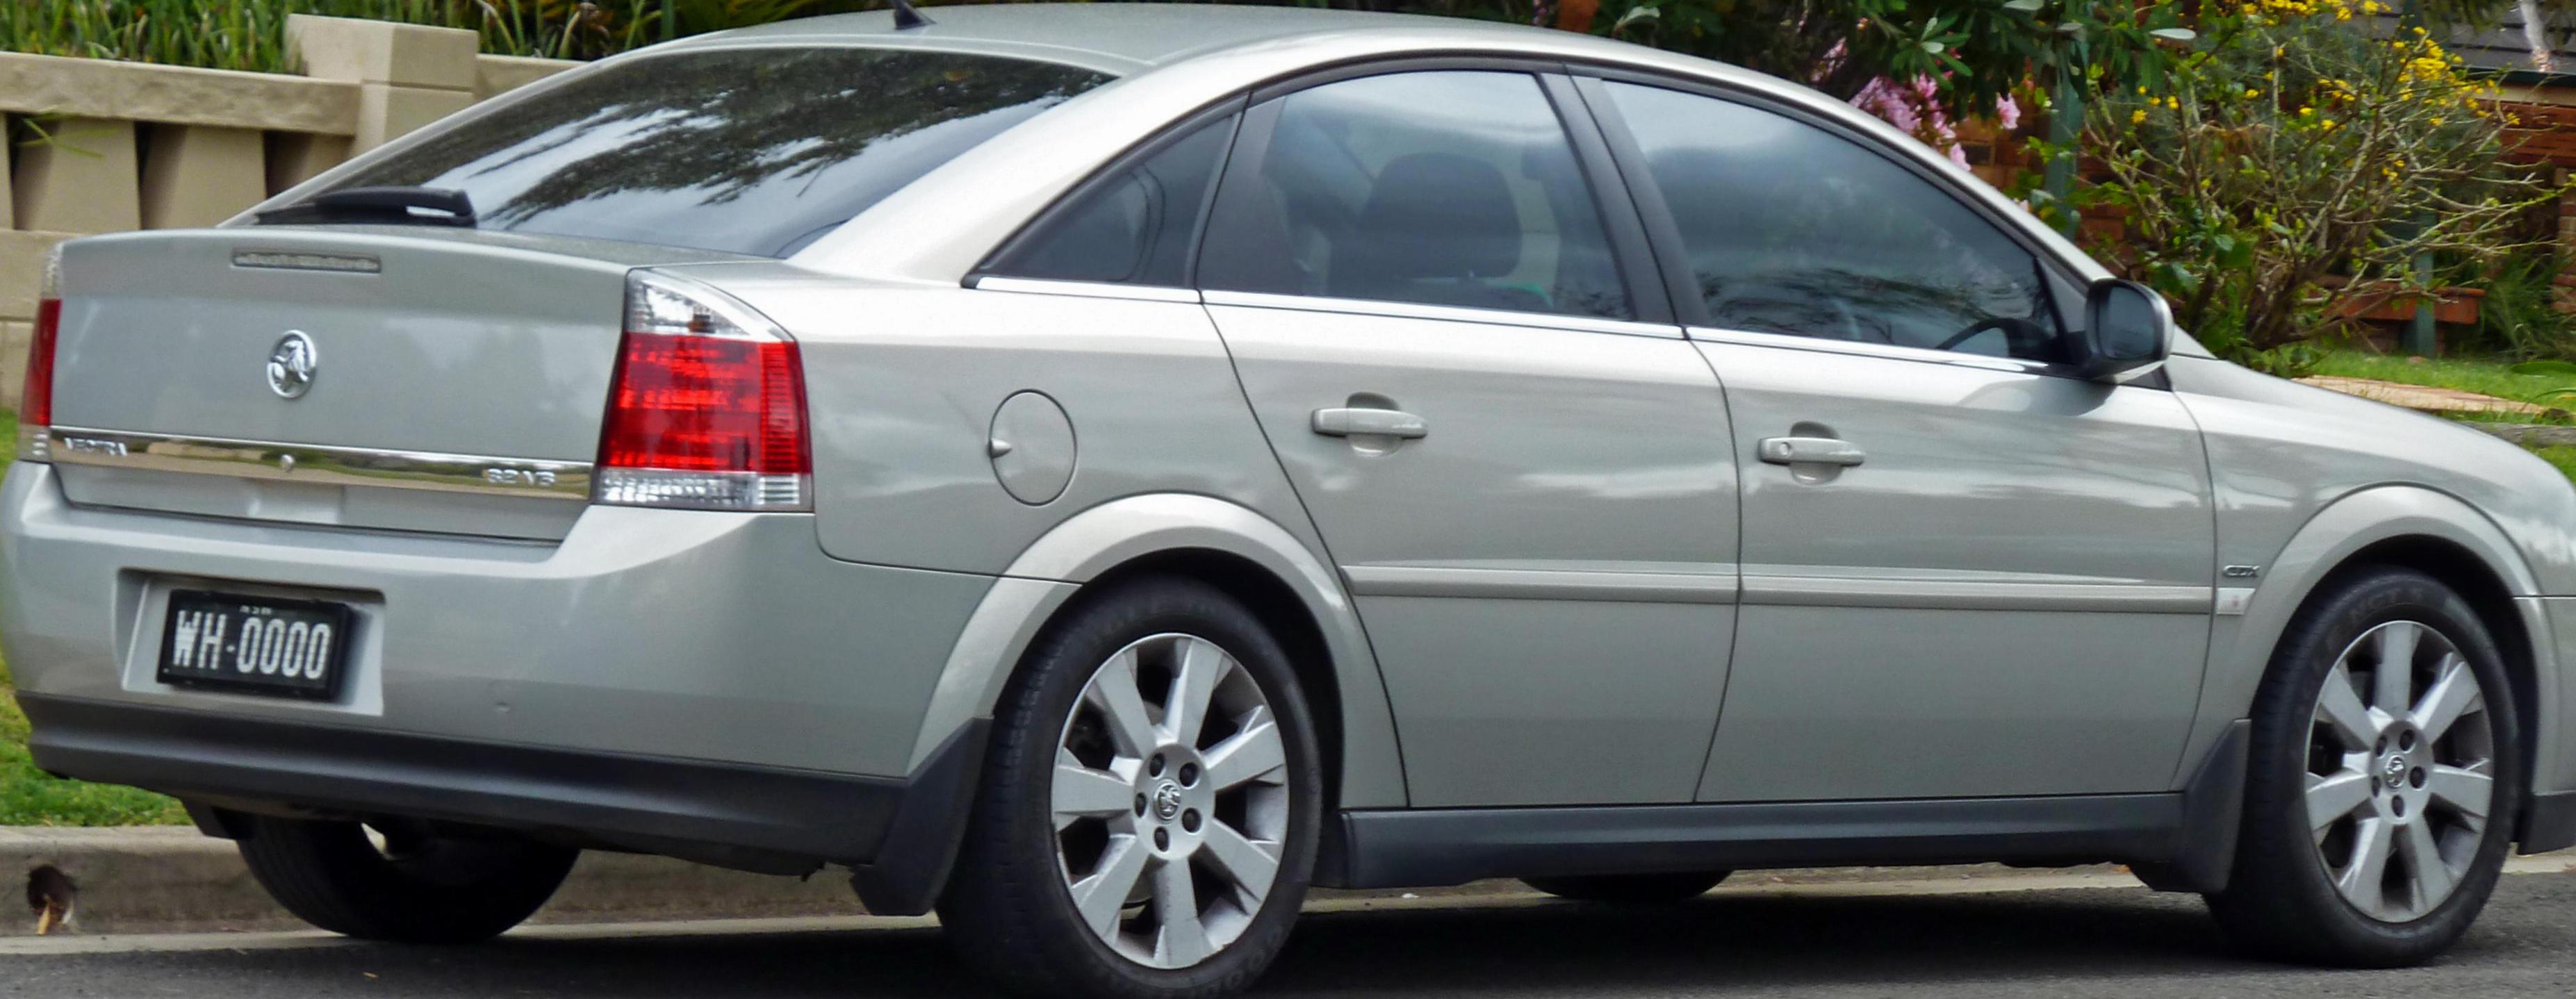 Opel Vectra C Hatchback model 2006